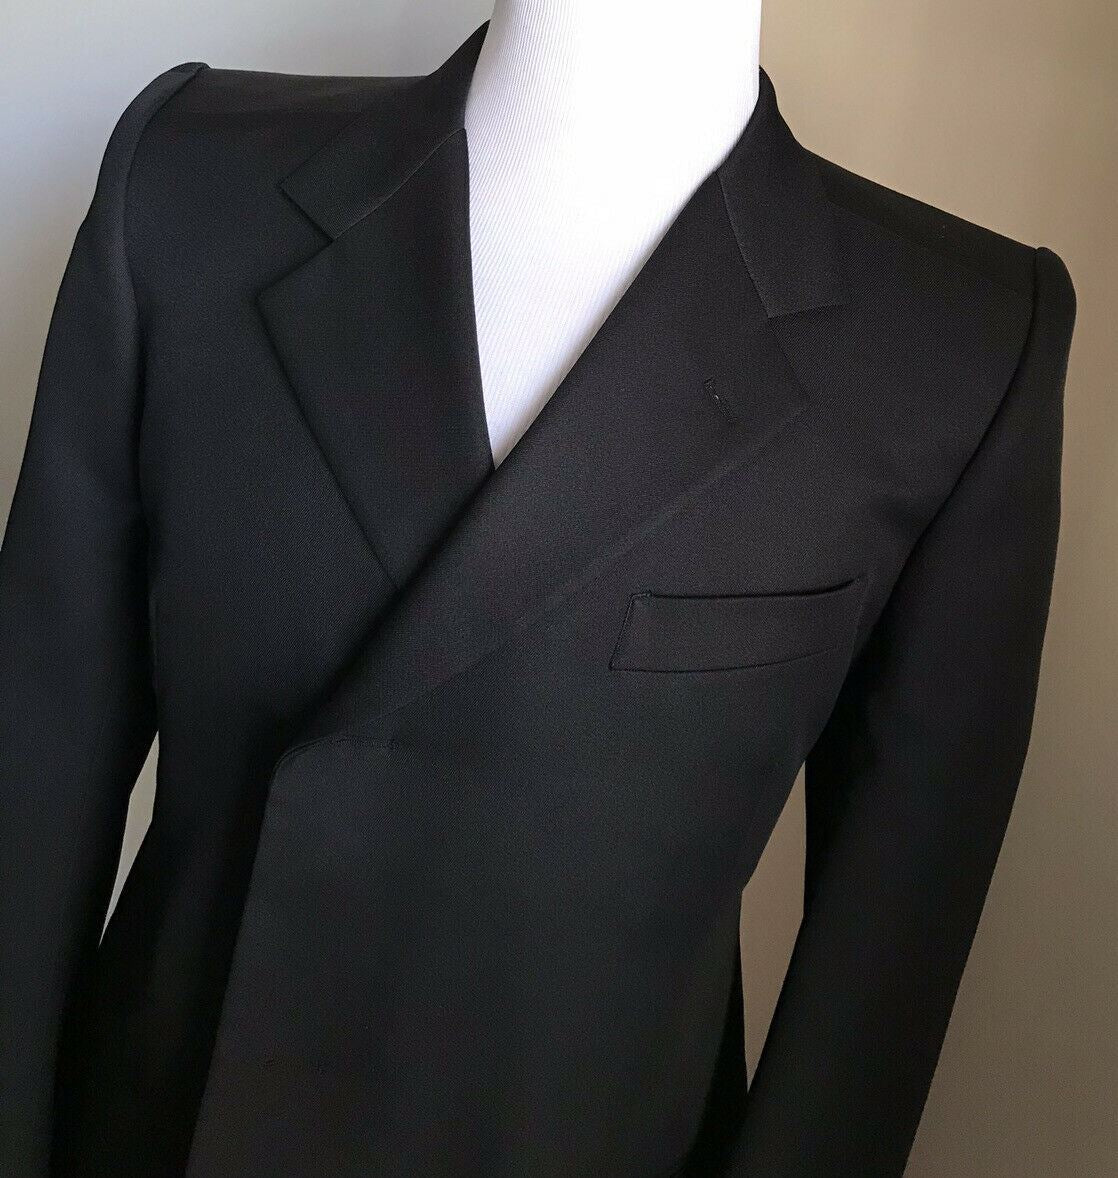 NWT $2050 Balenciaga Men slim fit Sport Coat Jacket Blazer Black 42 US/52 Eu Ita